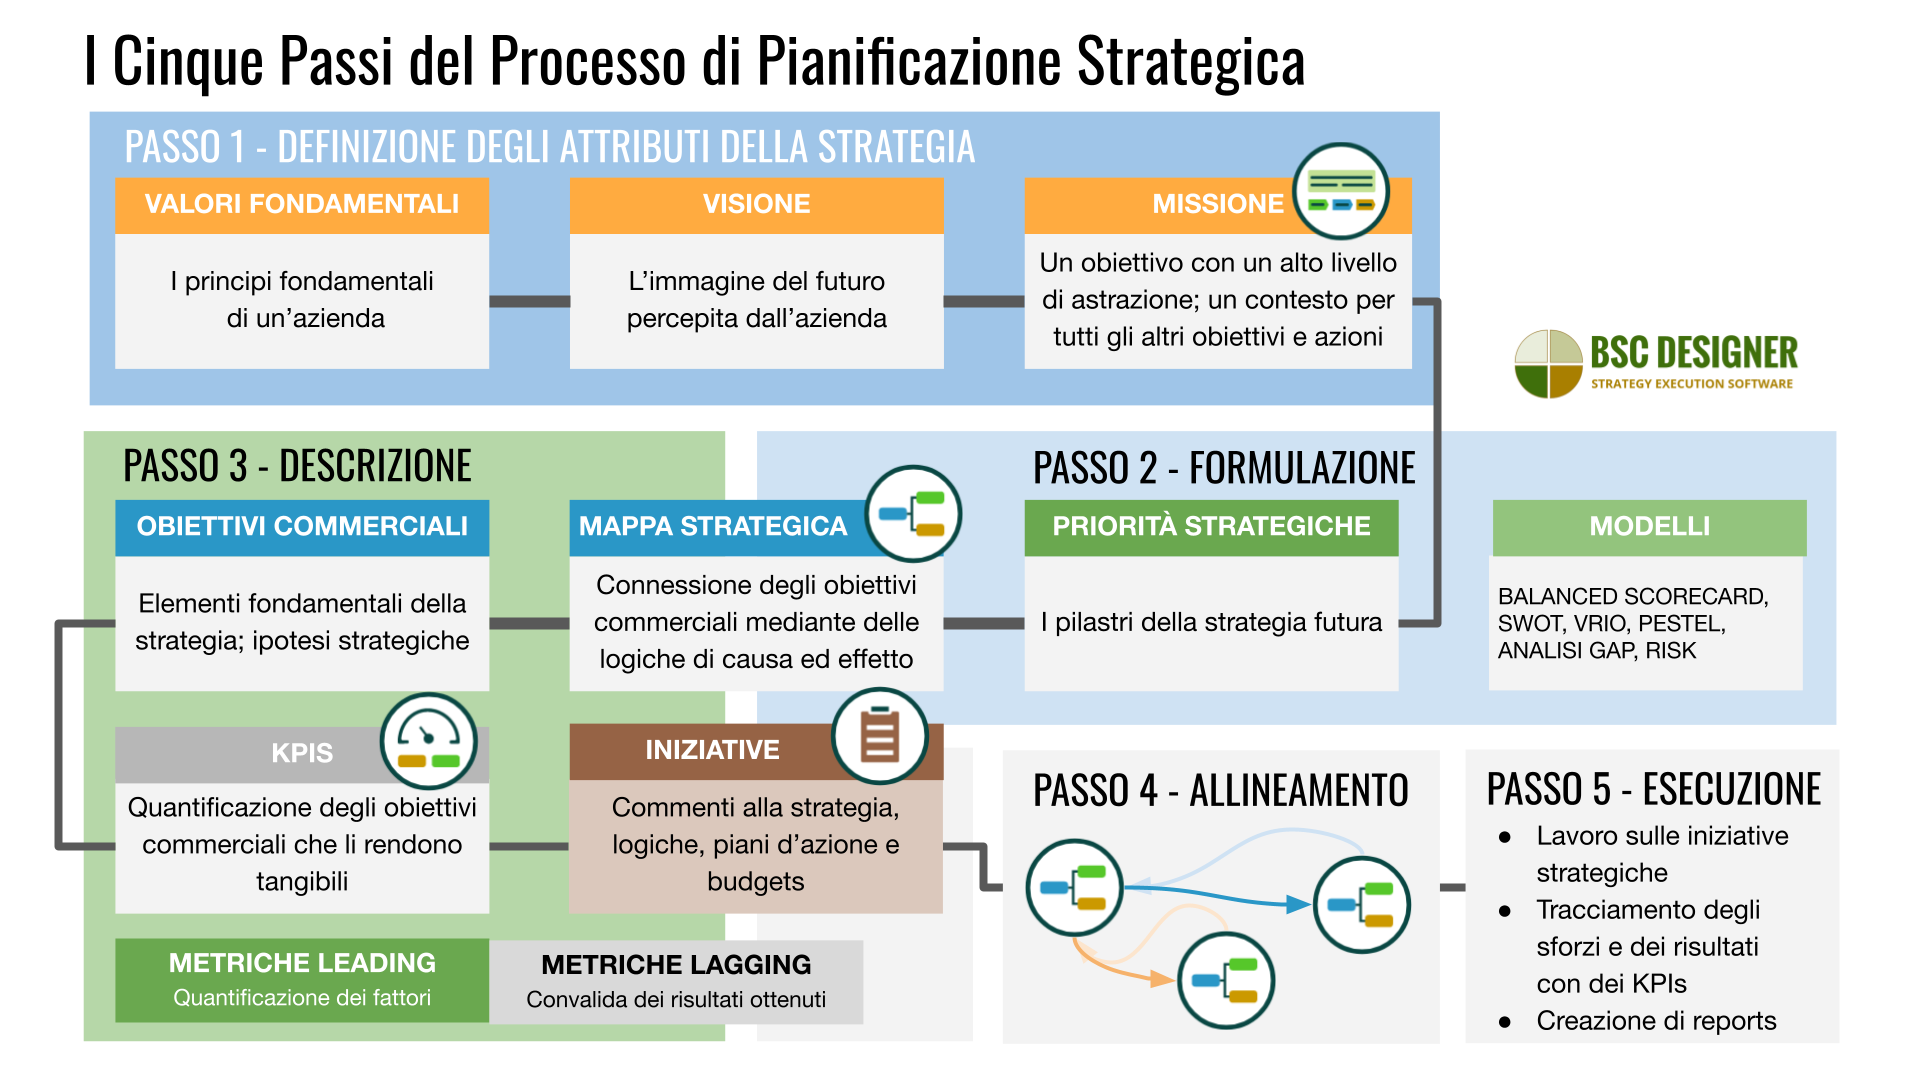 Le 5 fasi del processo di pianificazione strategica dalla definizione di valori, visione e missione alla descrizione della strategia su mappe strategiche con obiettivi aziendali, KPI e iniziative.